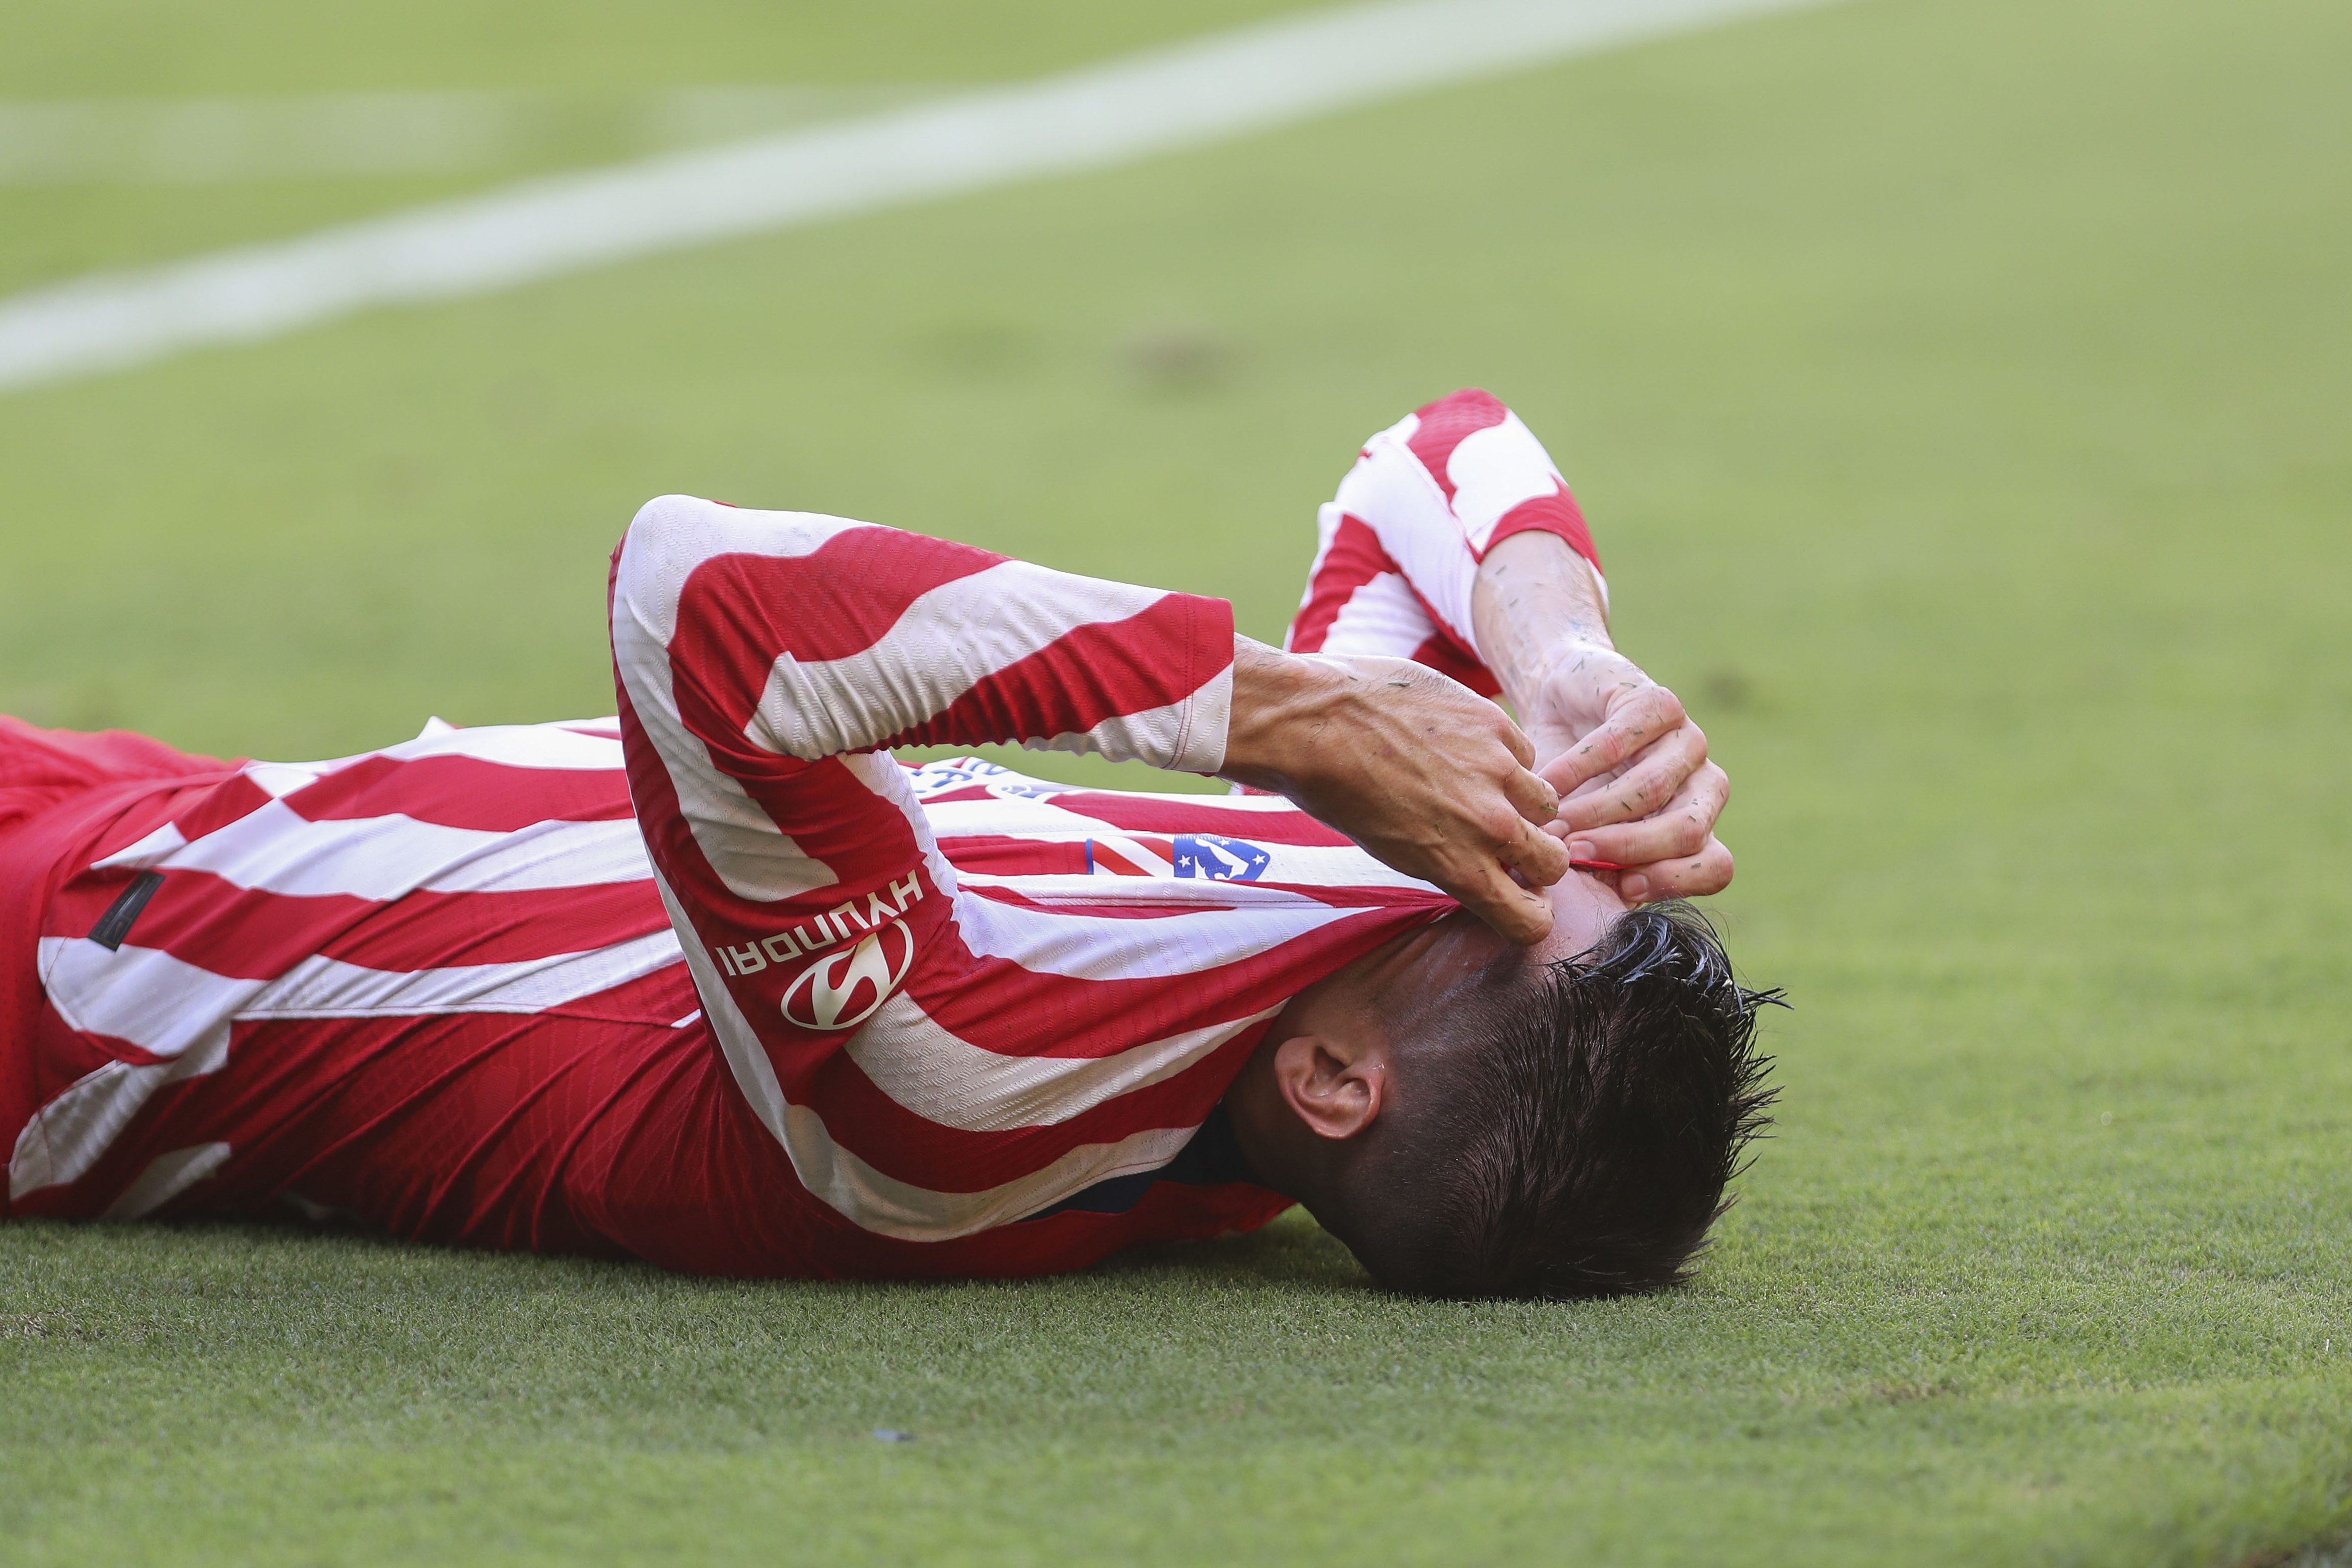 Morata no pudo contener su preocupación y tristeza luego de sufrir una lesión que siembra muchas dudas sobre su convocatoria con España para el Mundial. (Foto Prensa Libre: EFE)